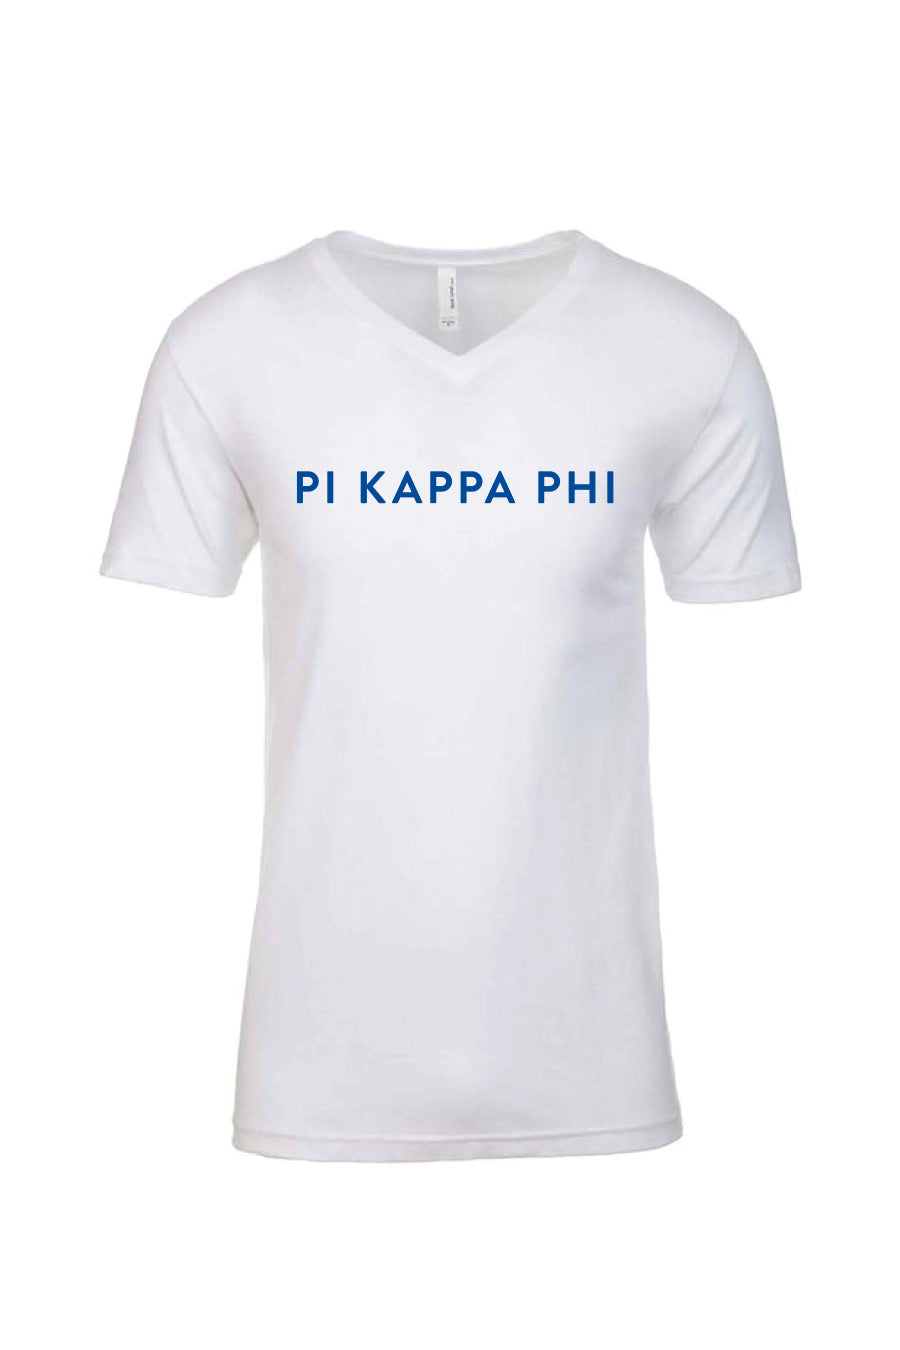 Basic Pi Kappa Phi V-Neck